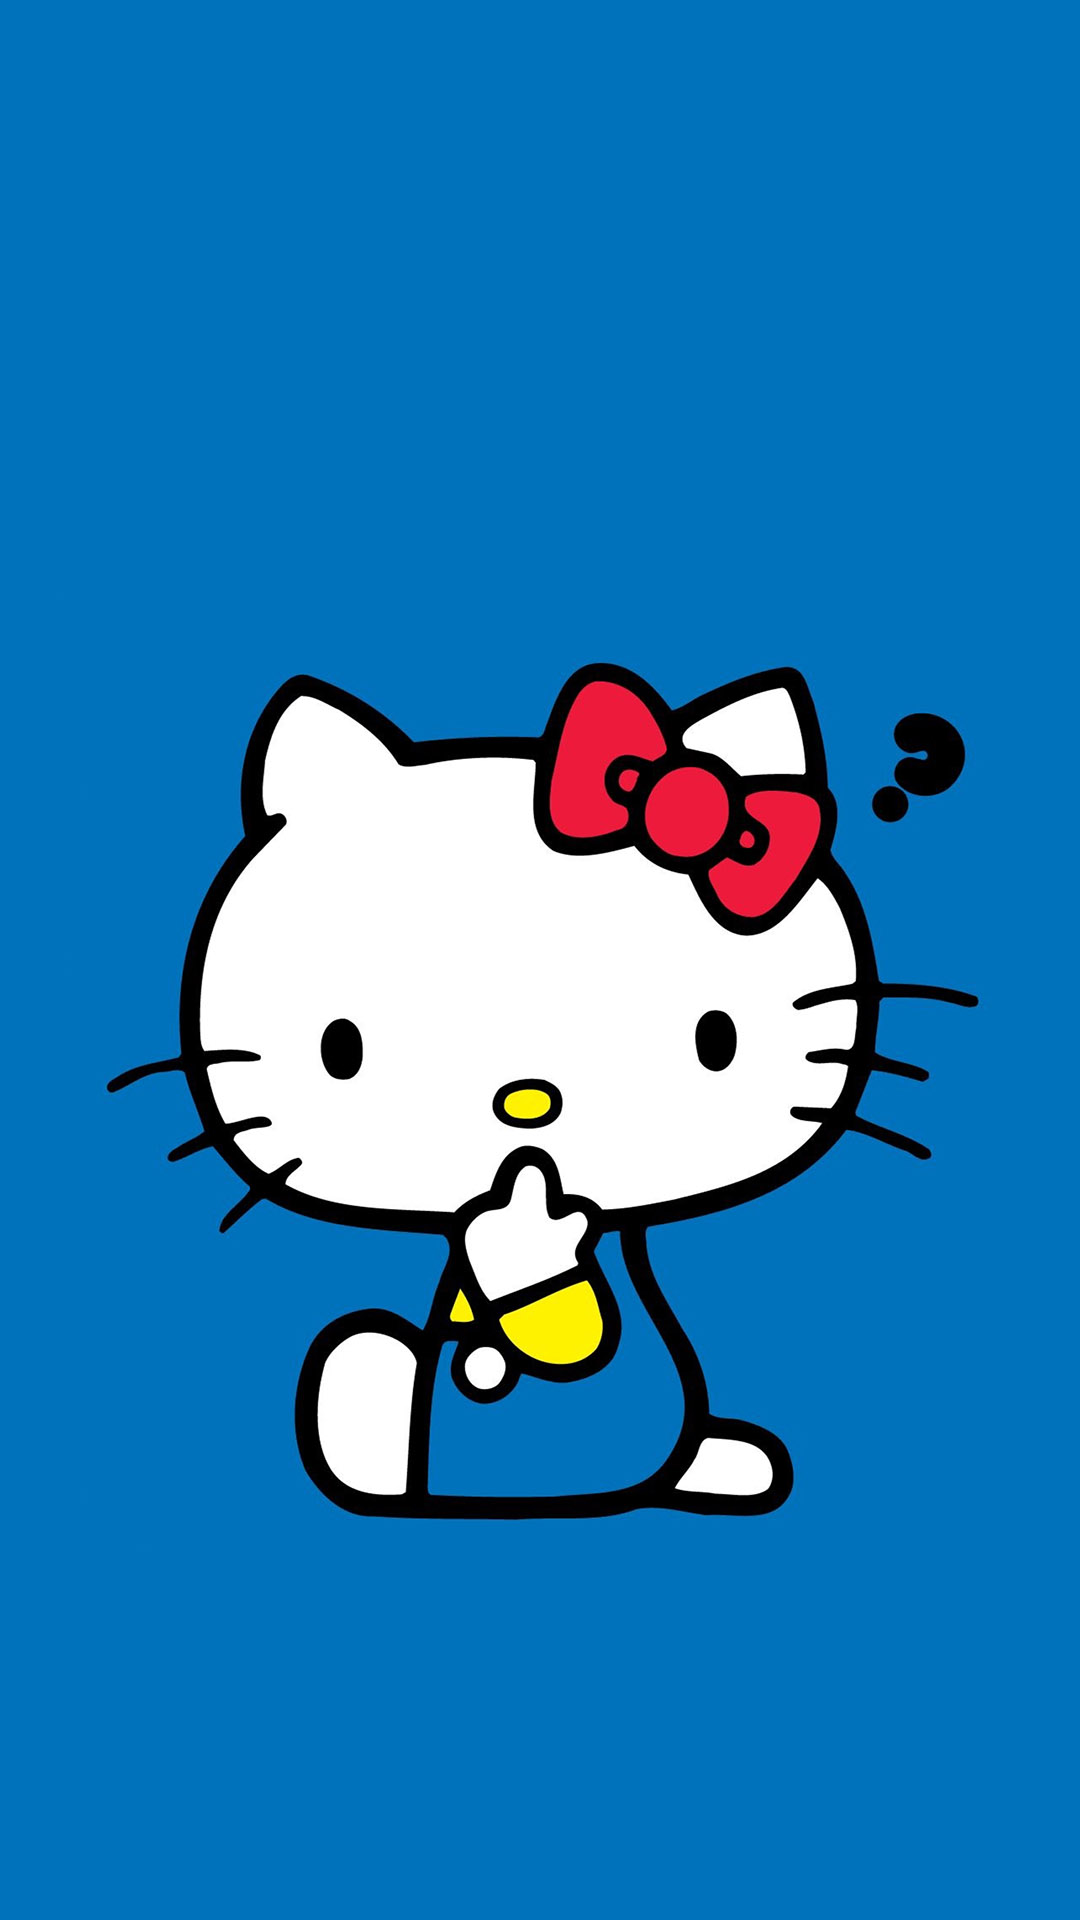 可爱卡通Hello Kitty高清图片大全